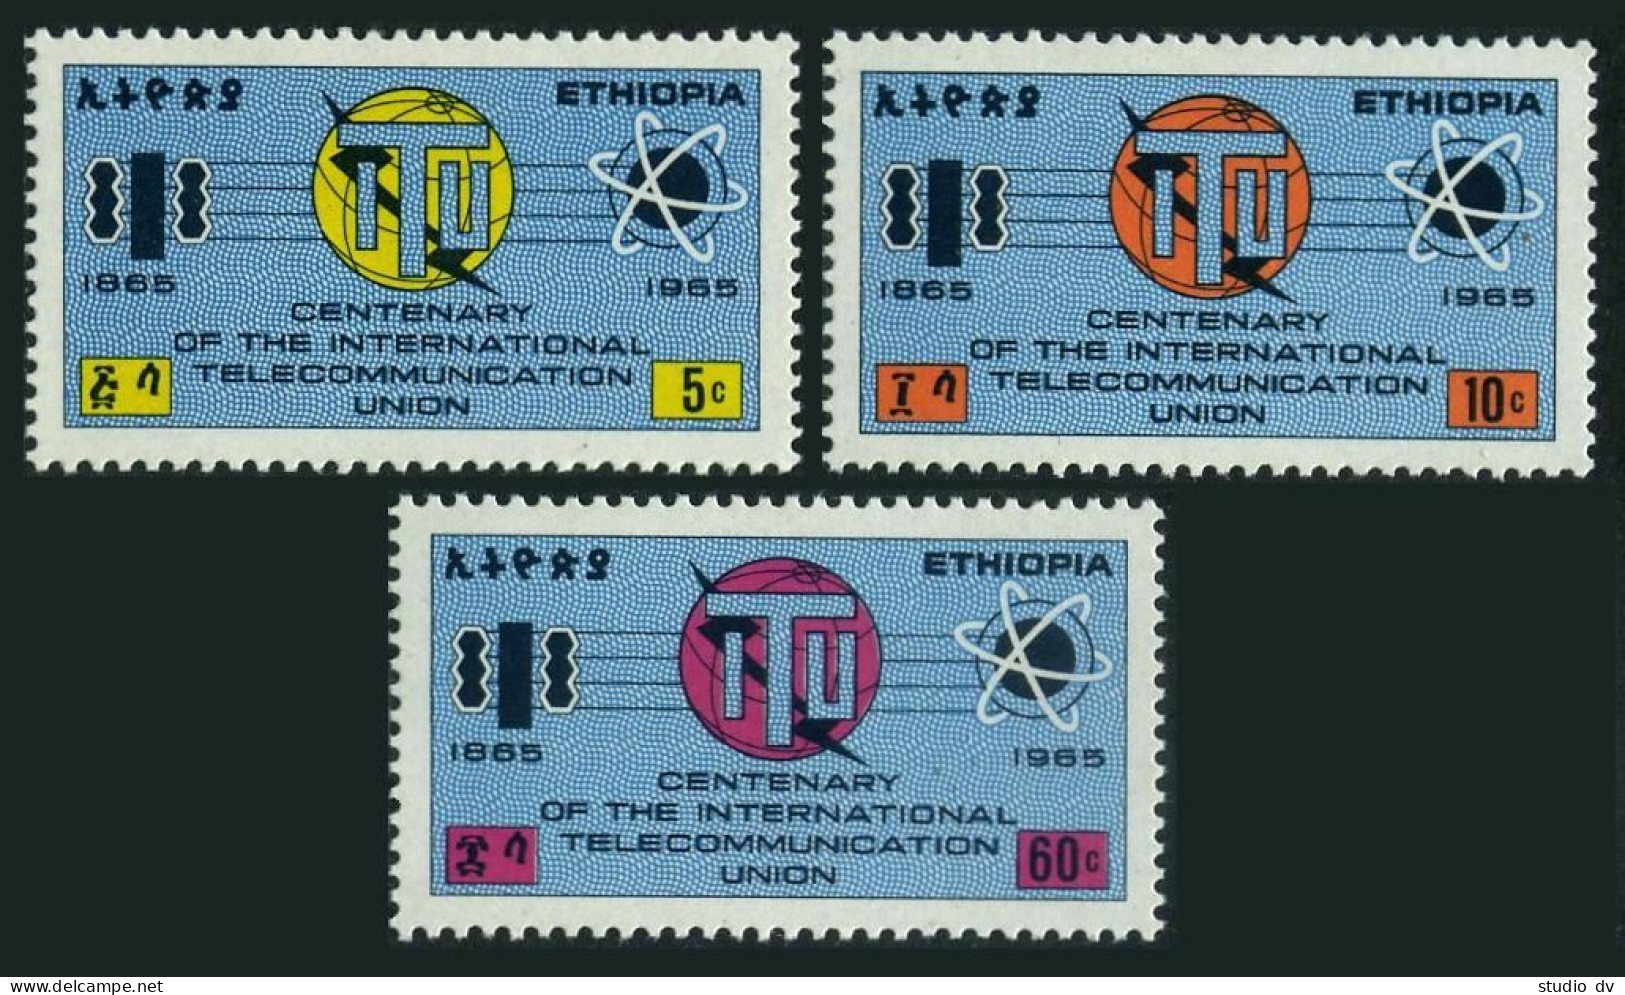 Ethiopia 439-441,hinged.Mi 500-502. ITU-100,1965.Communication Symbols. - Ethiopia